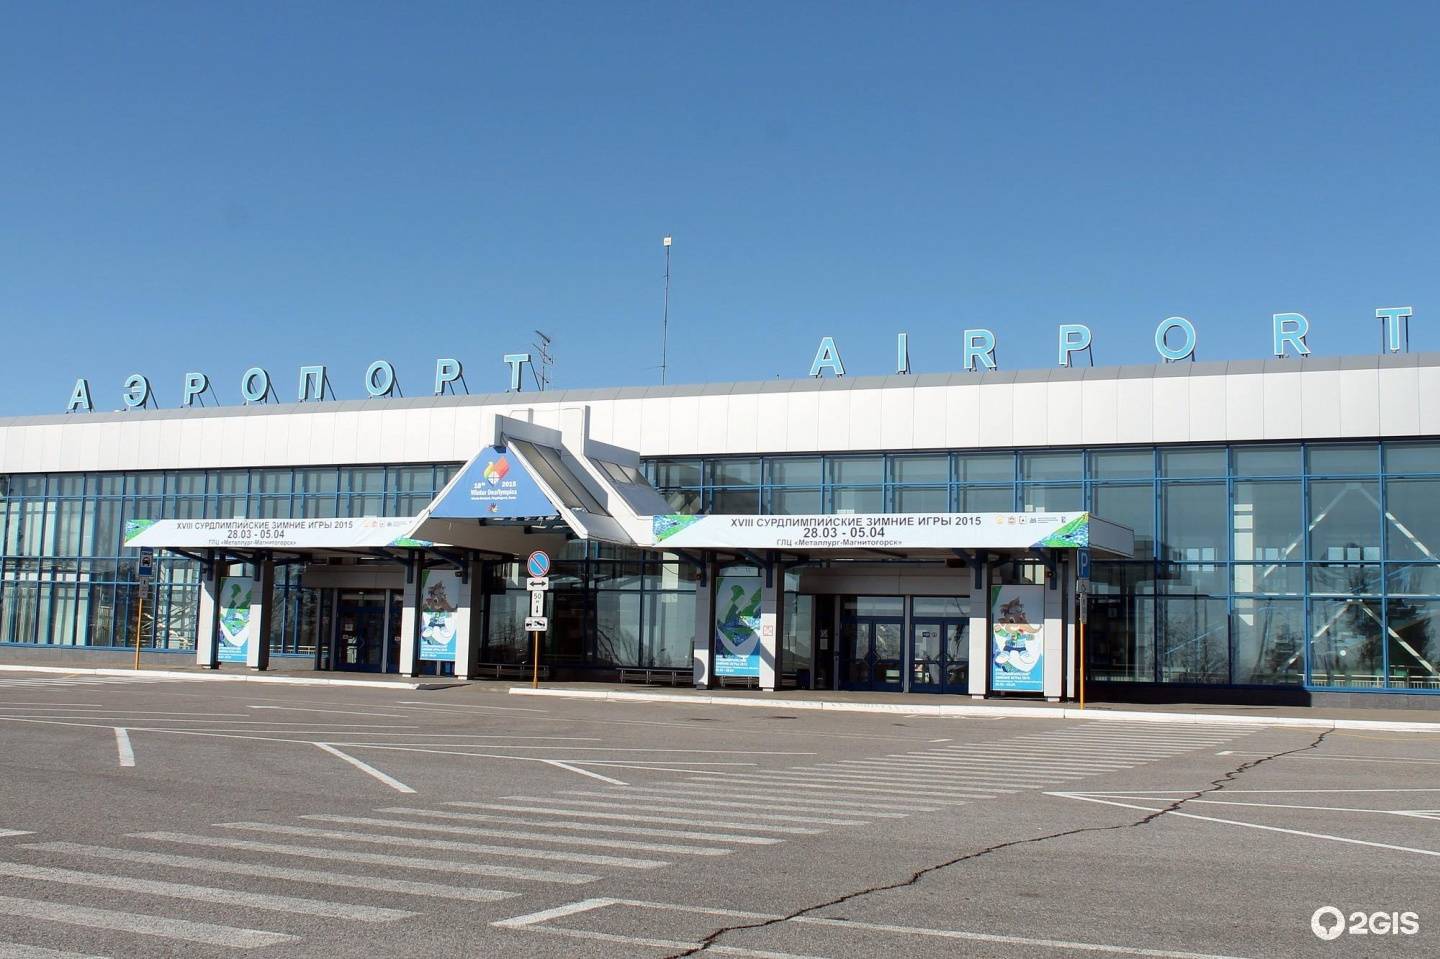 Аэропорт тамбов: есть ли он там, где находится тамбовский аэропорт донское, какие услуги предоставляет и сколько они стоят